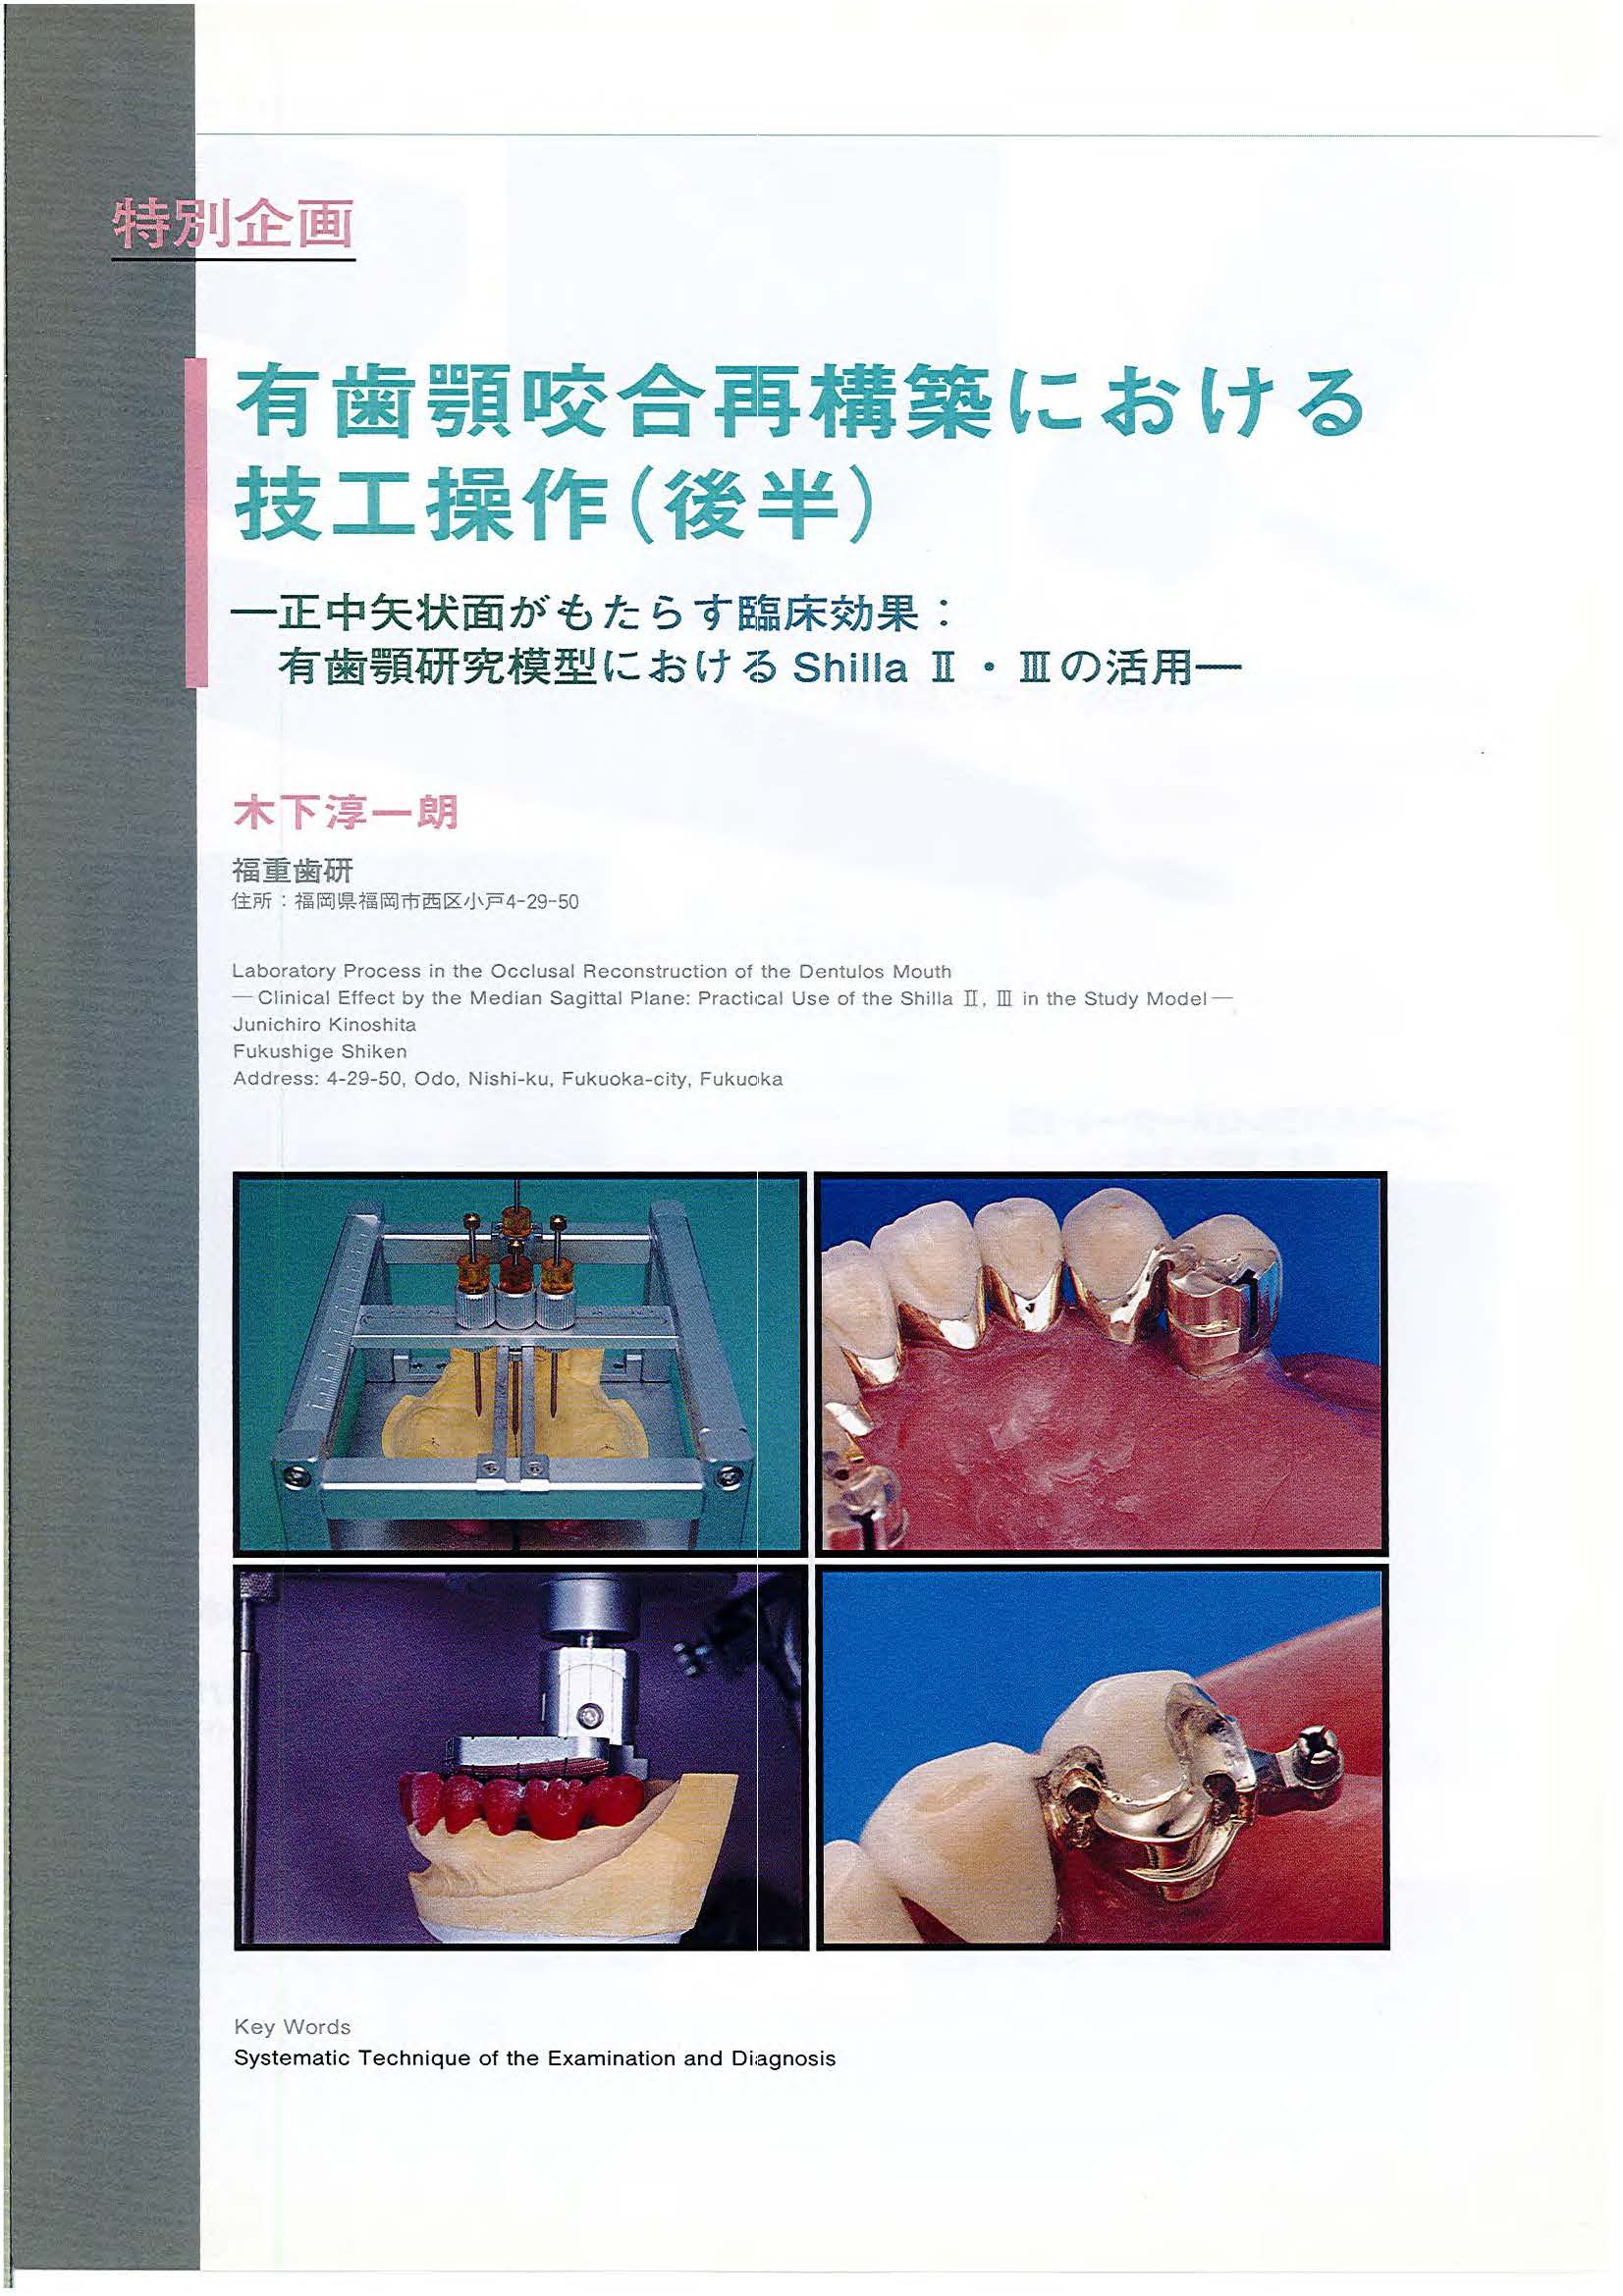 1998年論文・有歯顎咬合再構築における技工操作（後半）